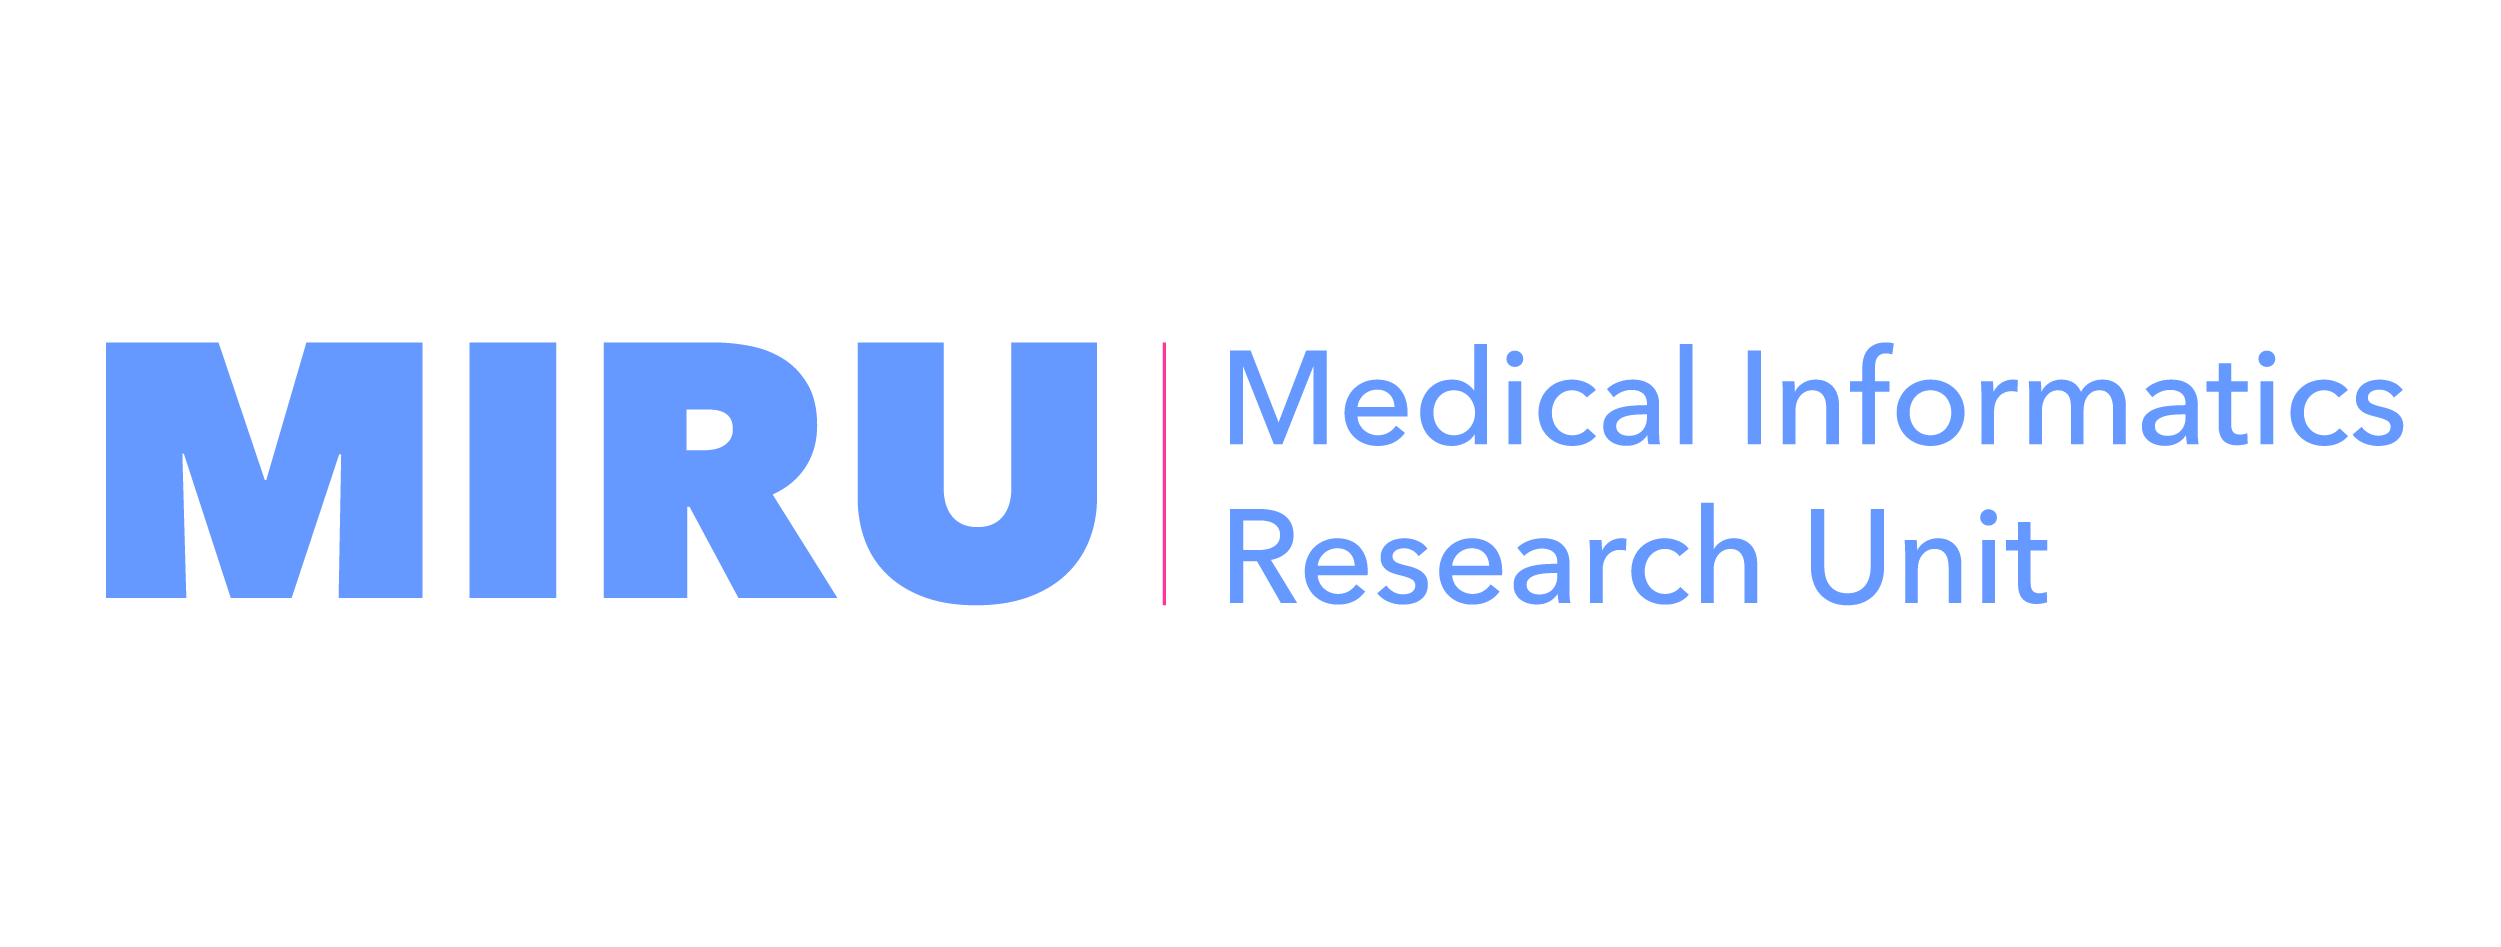 Medical Informatics Research Unit